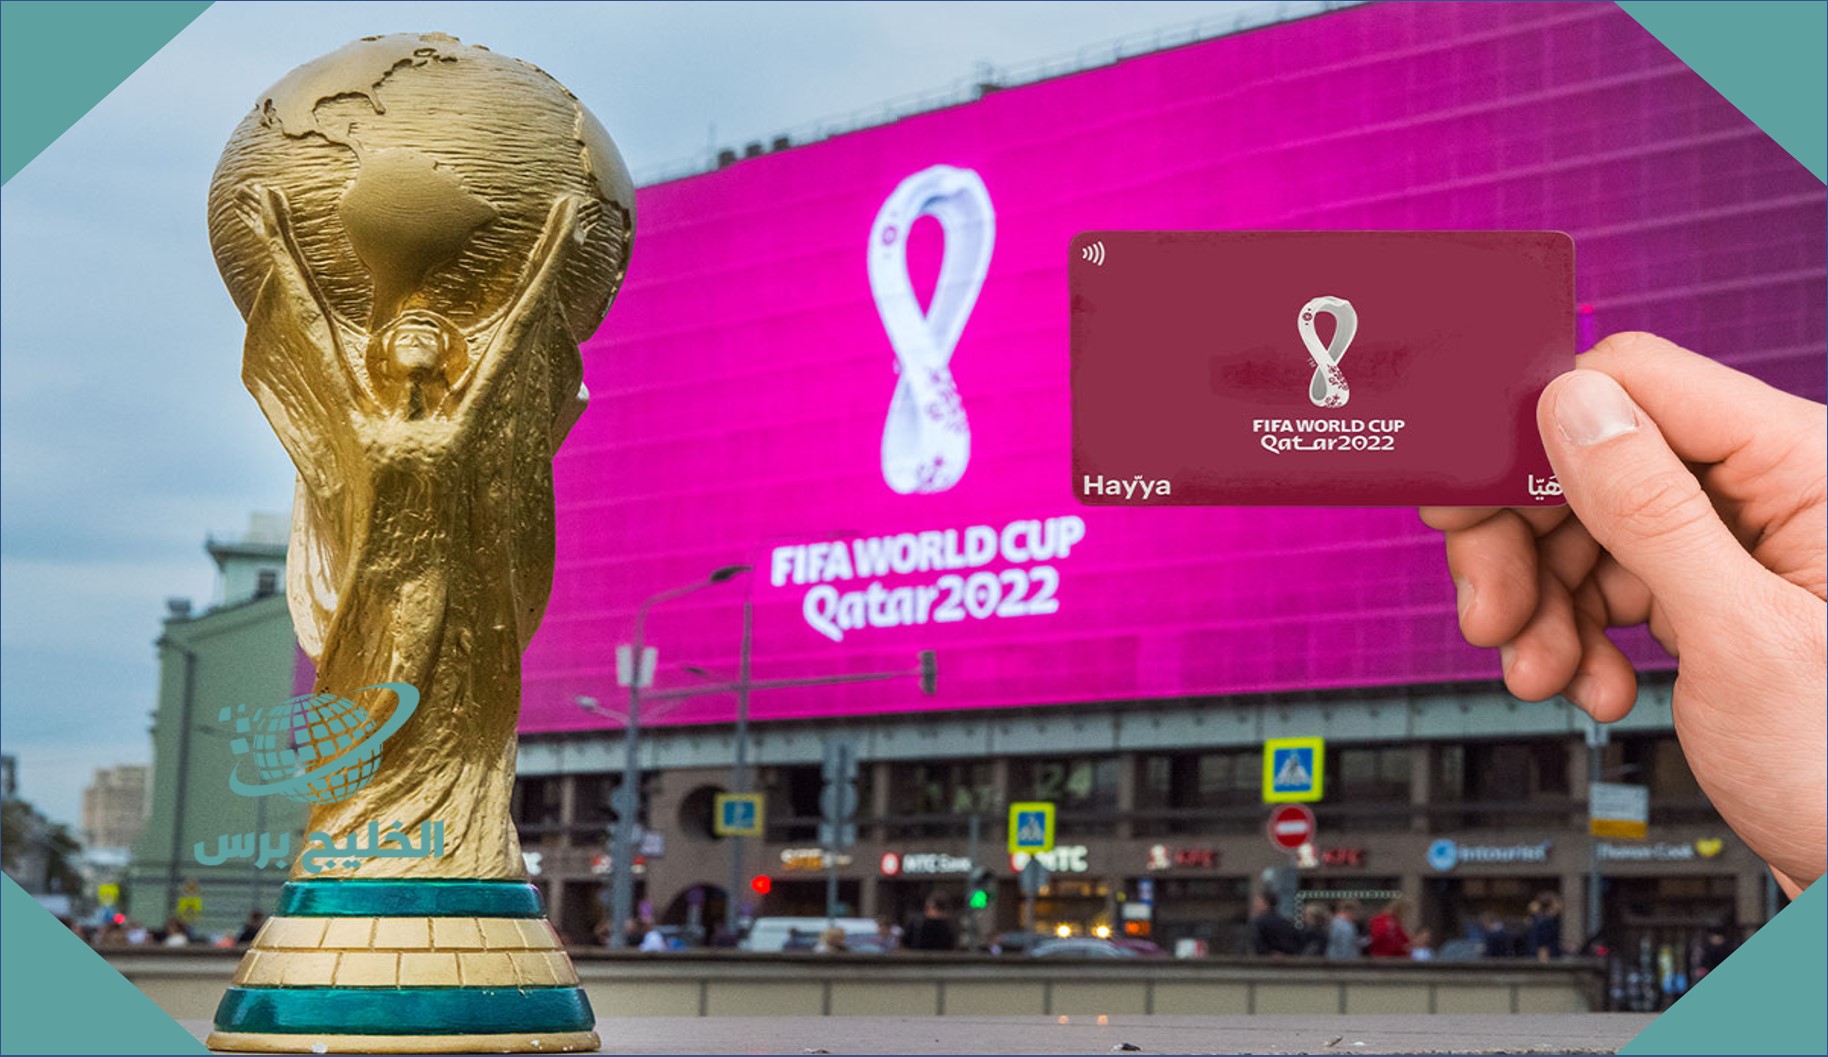 السعودية ترحب بحاملي بطاقة “هيّا” لمشجعي كأس العالم بقطر 2022